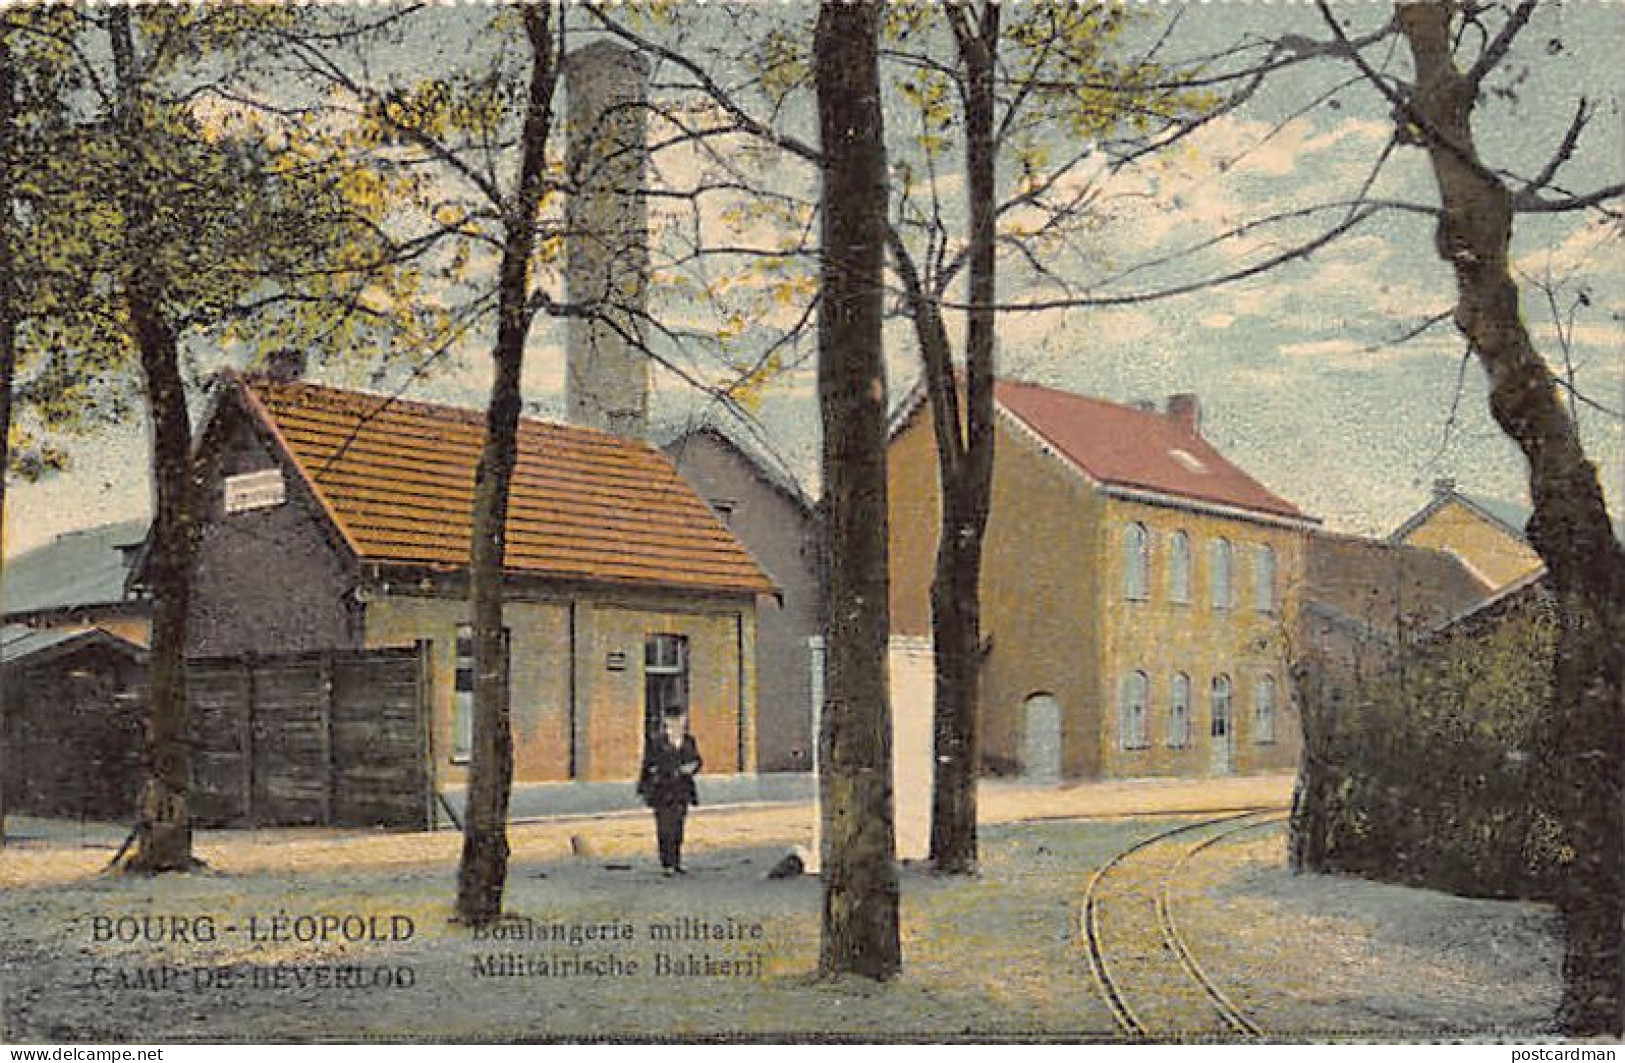 België - LEOPOLDSBURG (Camp De Beverloo) (Limb.) Militairische Bakkerij - Boulangerie Militaire - Leopoldsburg (Kamp Van Beverloo)